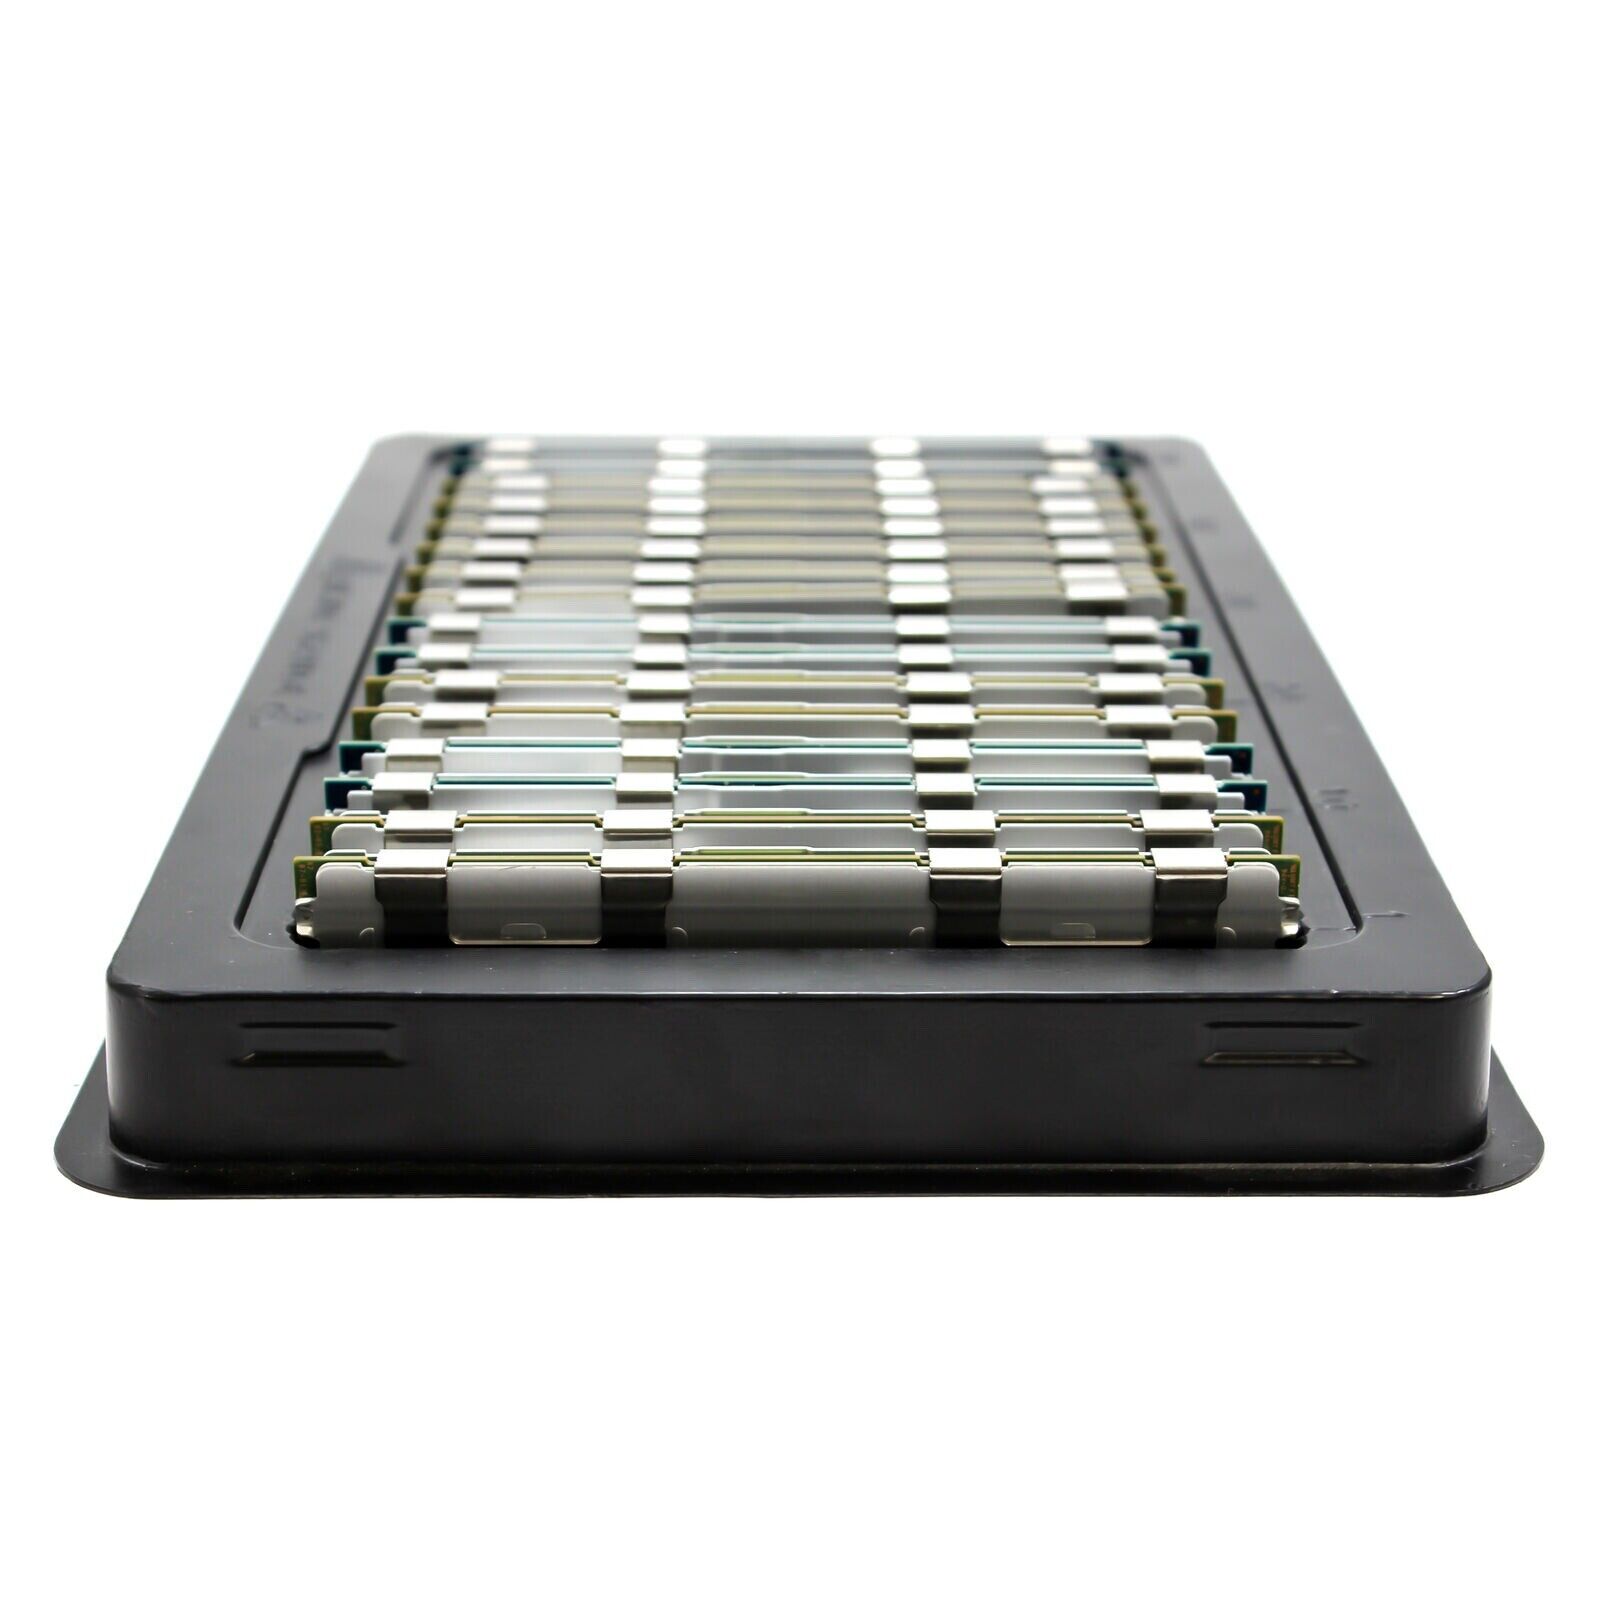 384GB (12x32GB) DDR3 PC3-10600R 4Rx4 ECC Reg Server Memory for Dell M610X